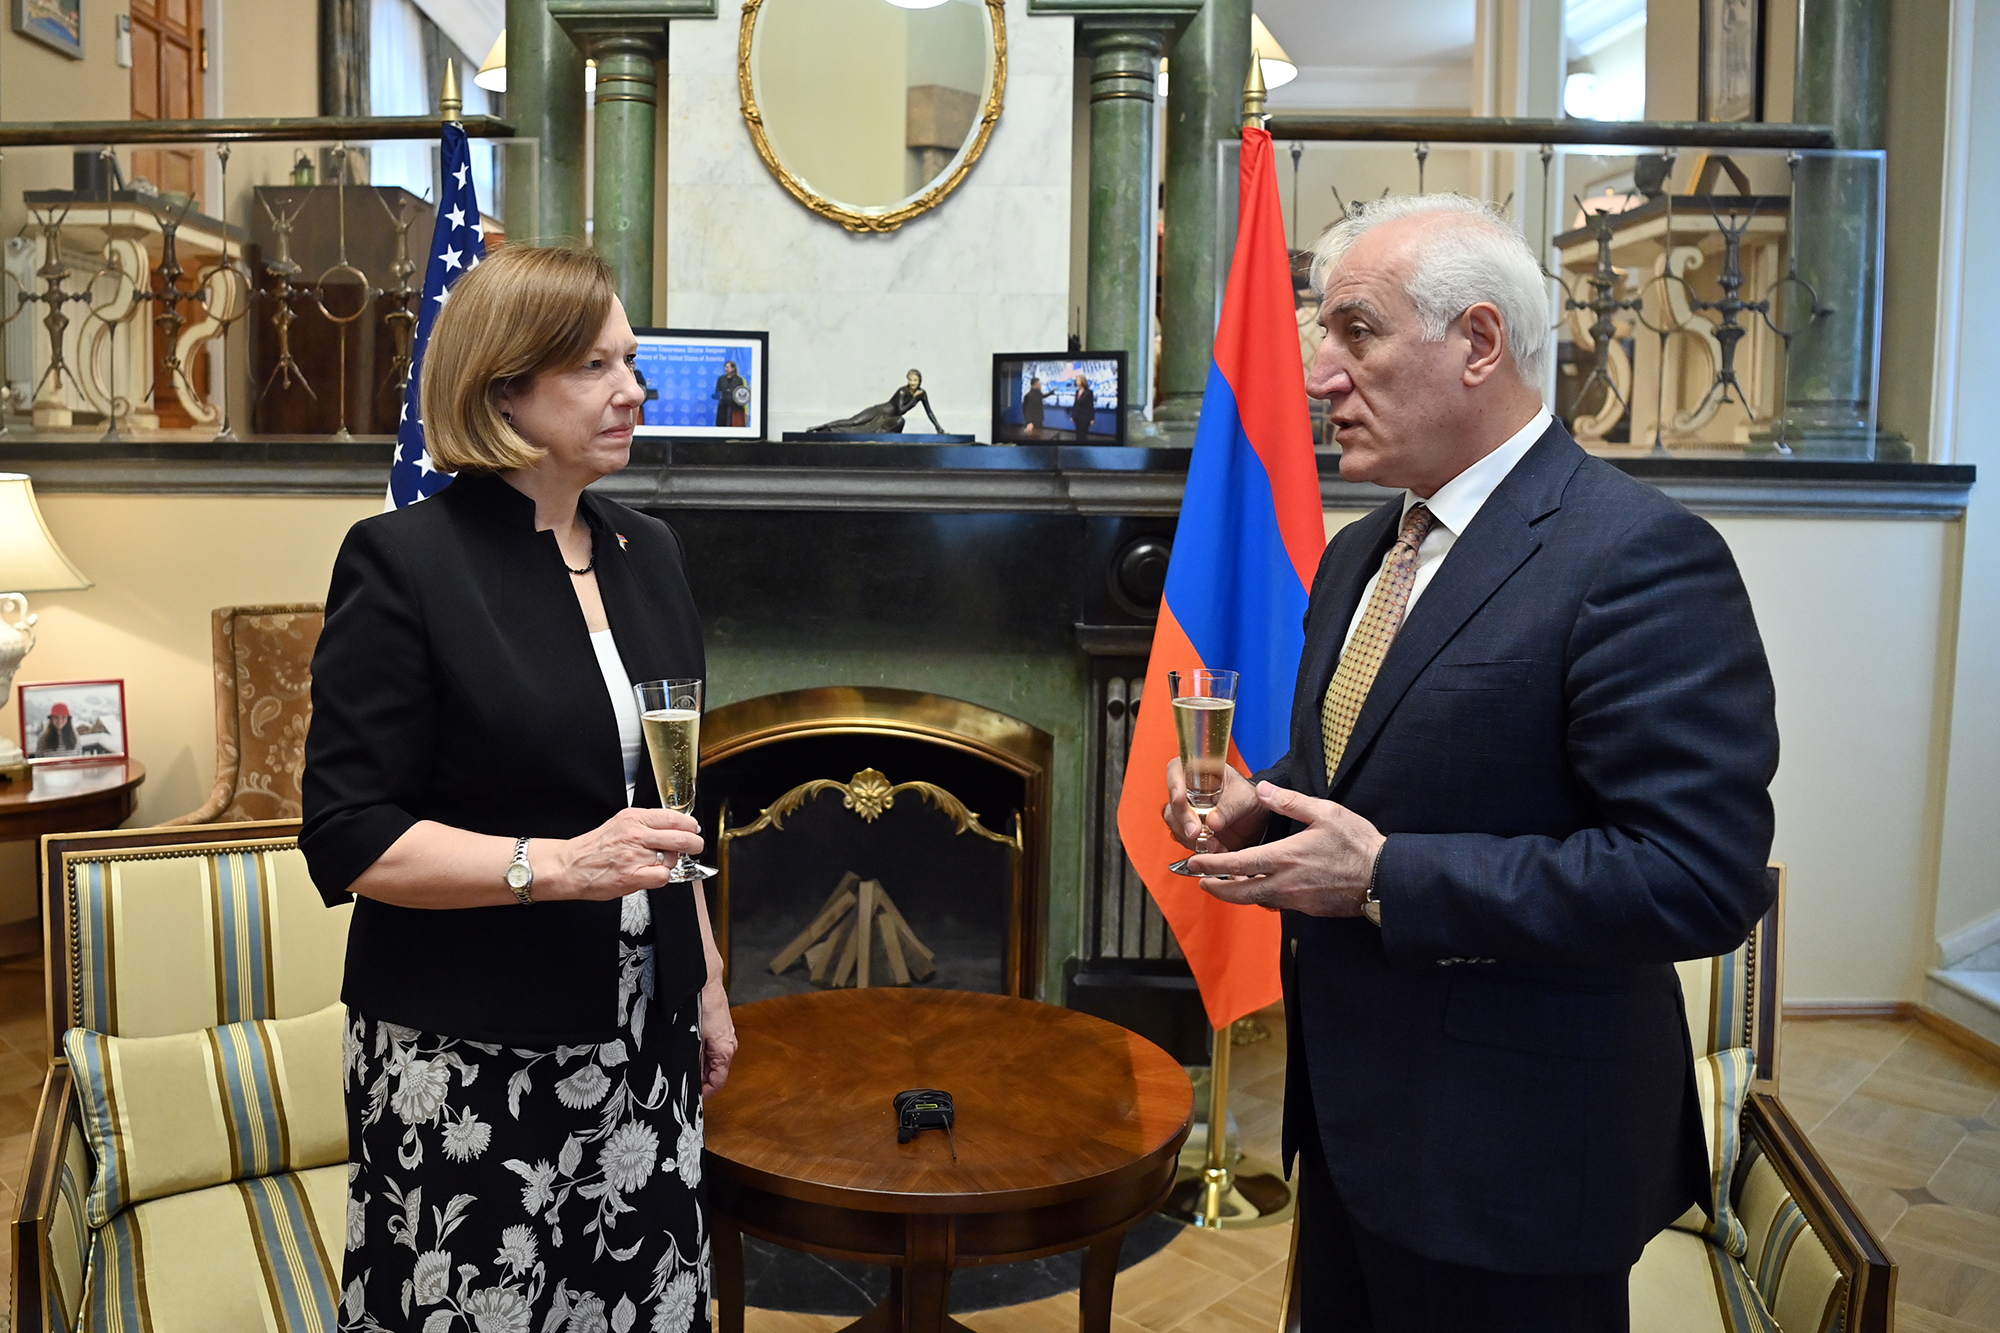  Հայաստանի նախագահն այցել է ամերիկյան դեսպանի կեցավայր և գովաբանել ԱՄՆ-ին 